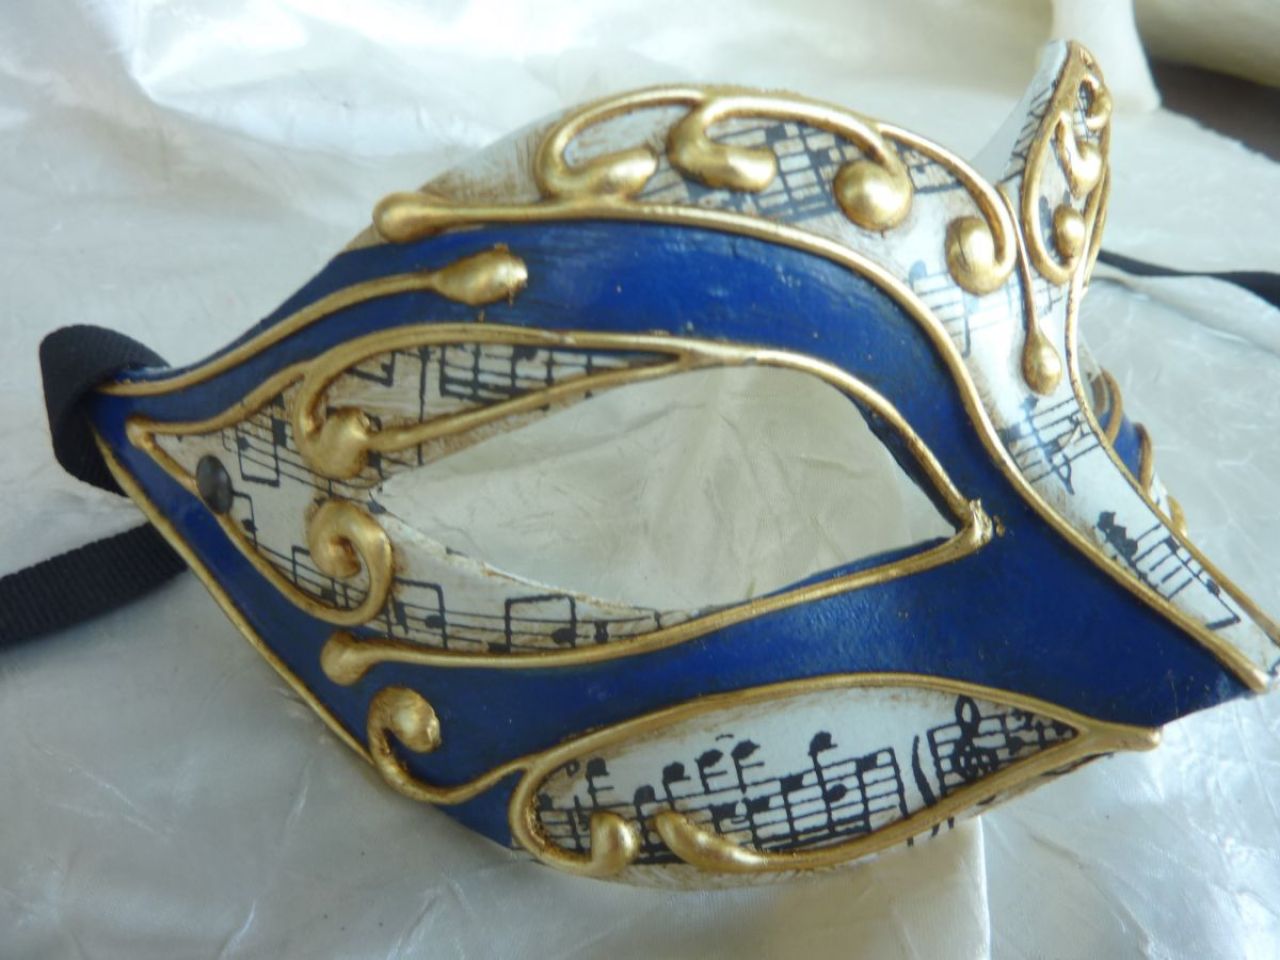 masque loup blanc et bleu en papier mÃ¢che , fait main, arabesques en relief dorÃ©s, papier musique